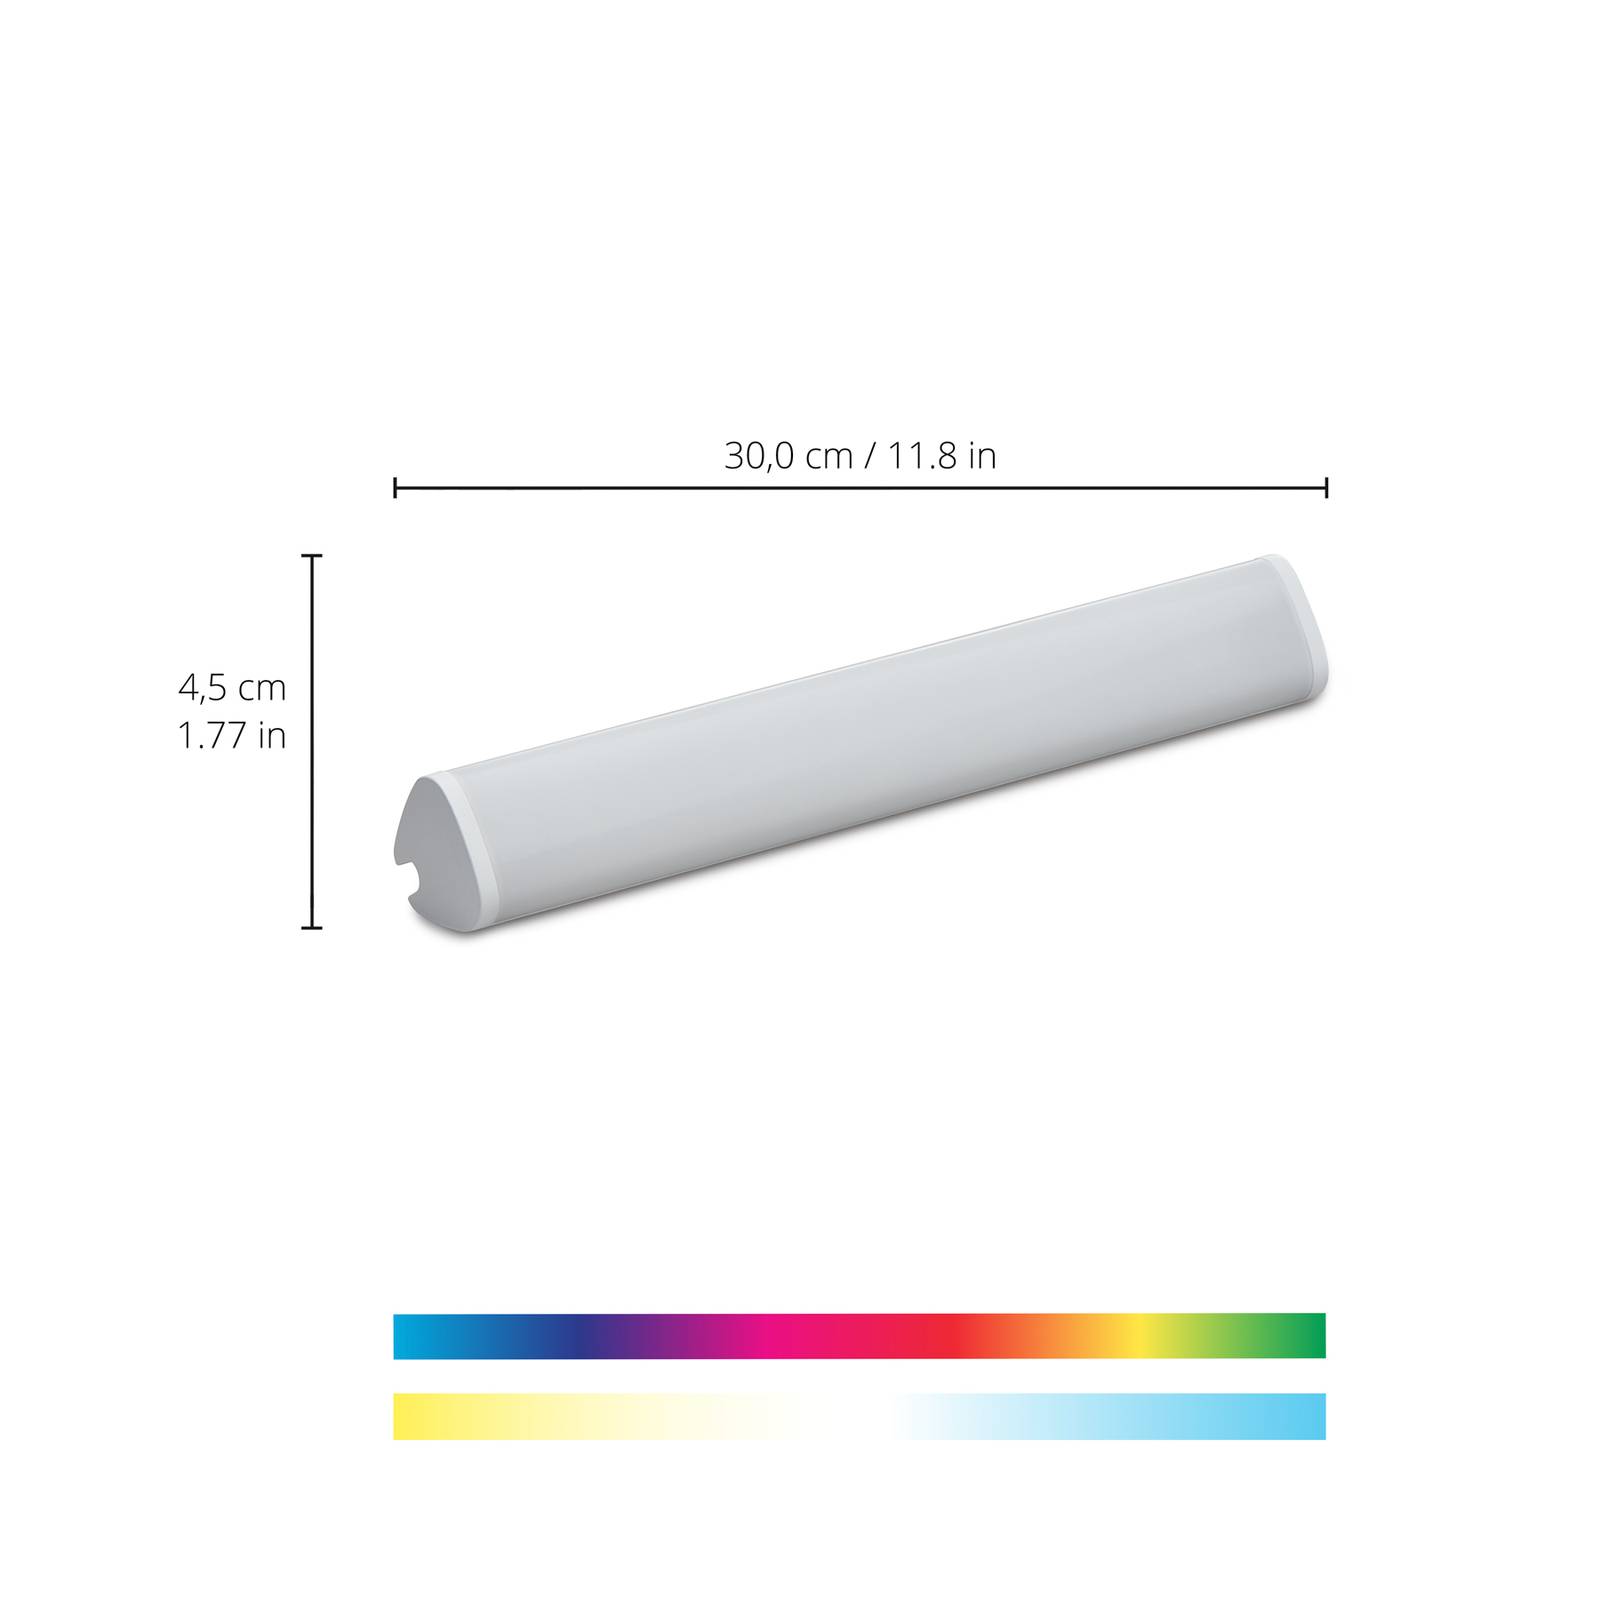 WiZ LED bordslampa Light Bar enstaka förpackning